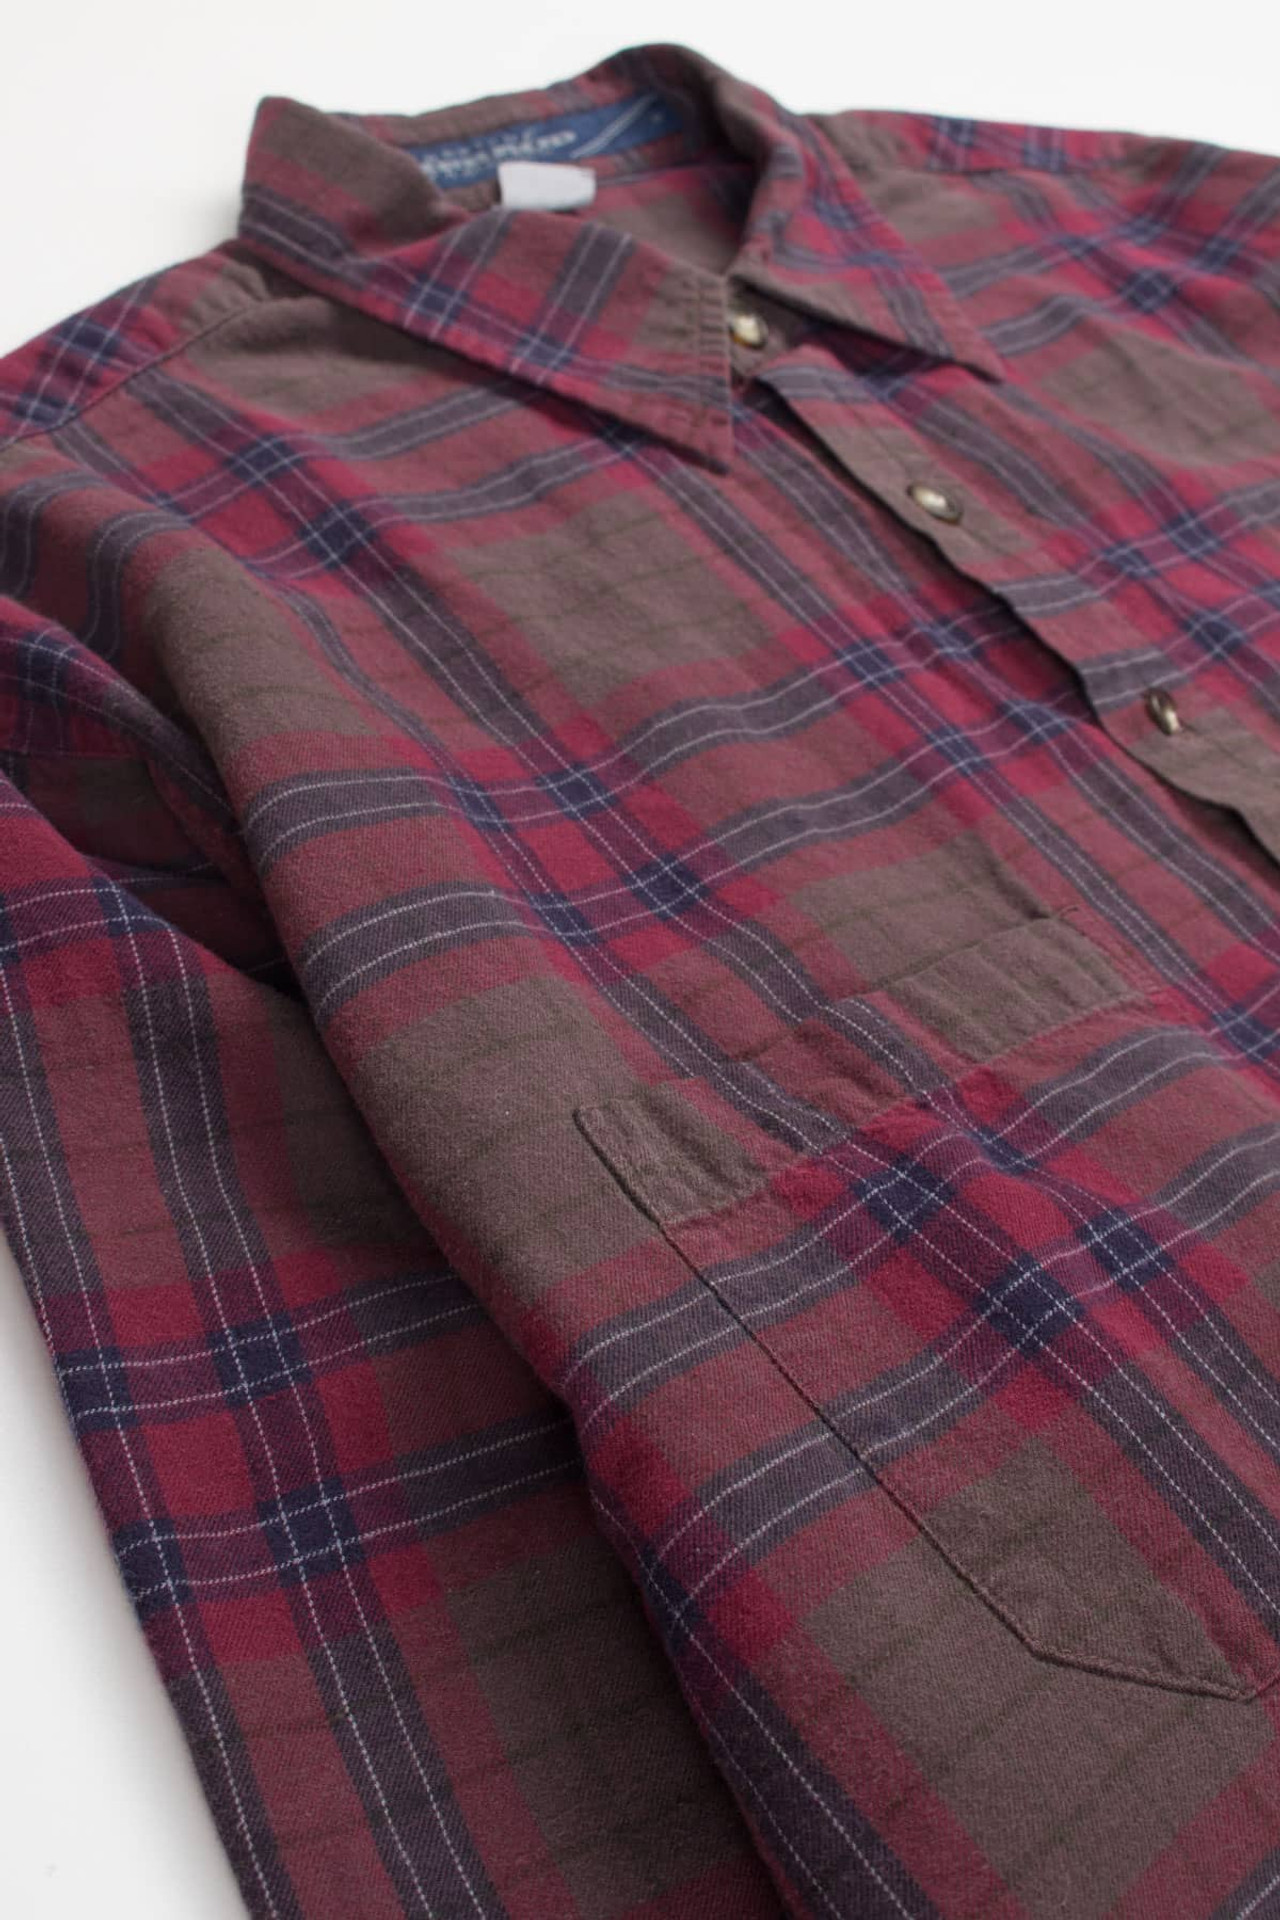 Vintage Girbaud Flannel Shirt 4116 - Ragstock.com